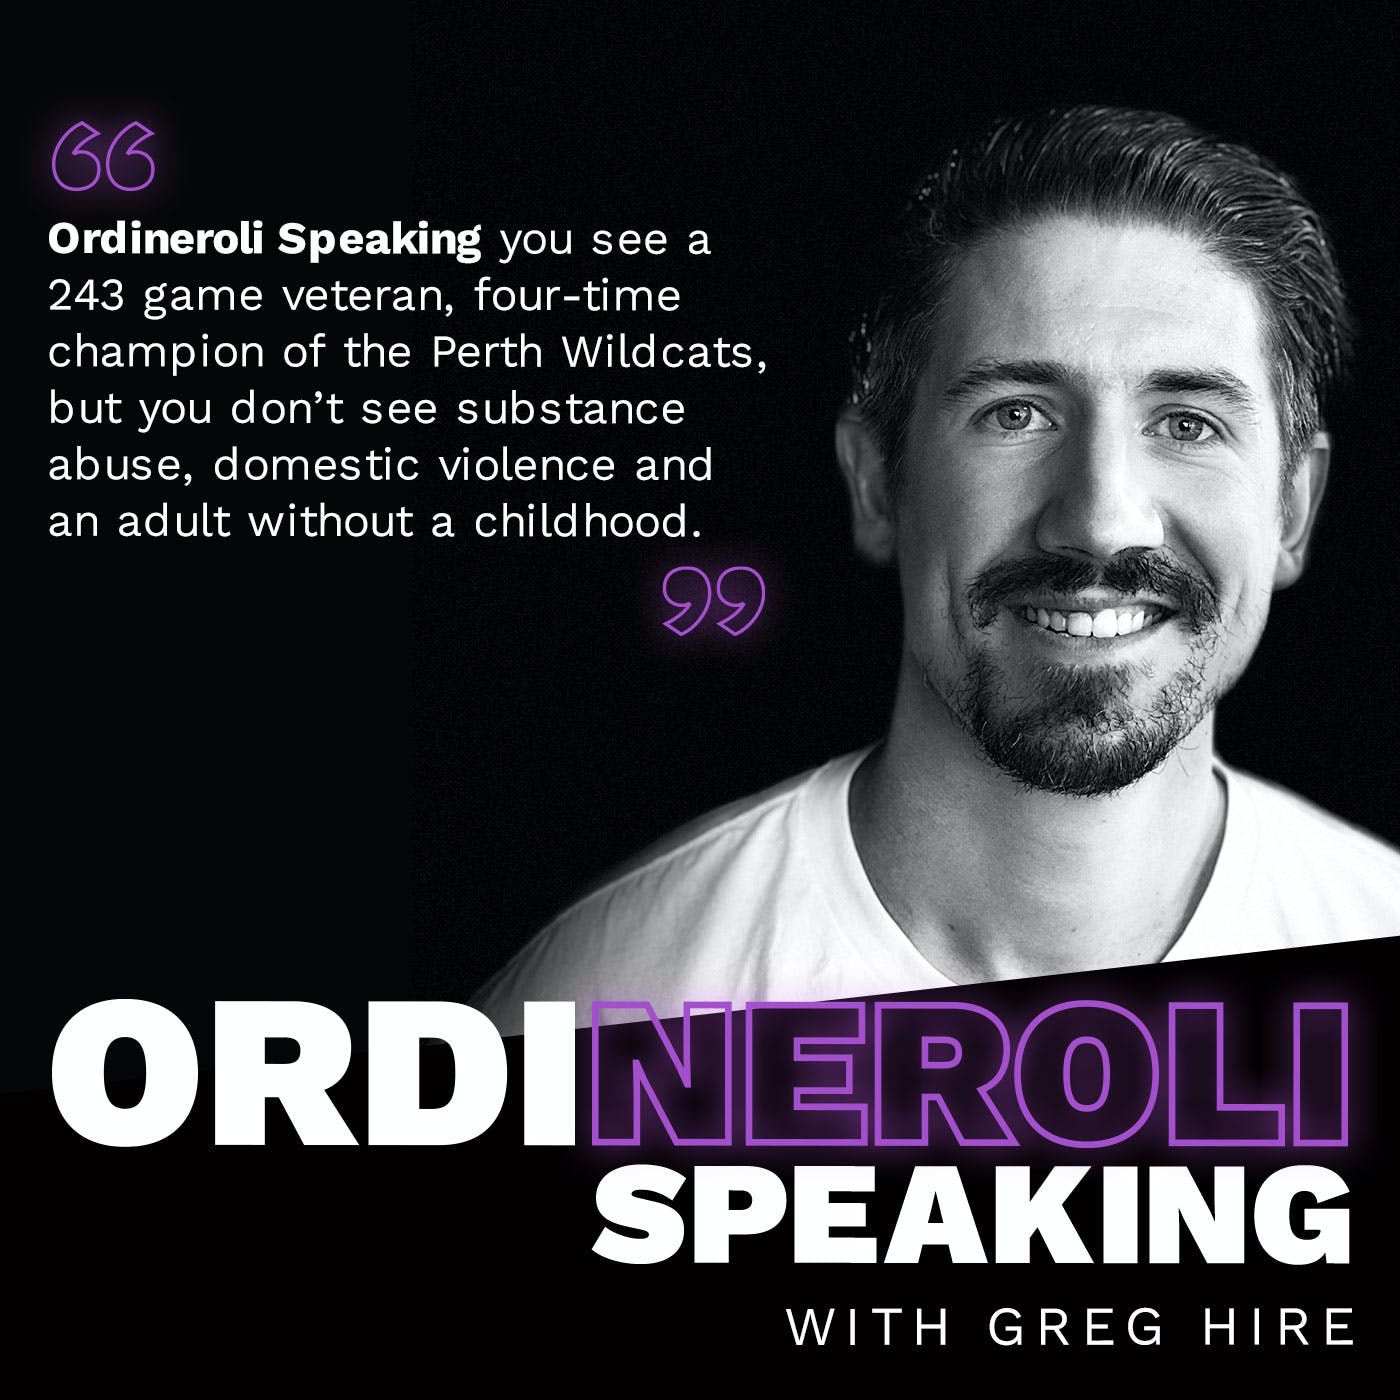 Greg Hire - Ordineroli Speaking